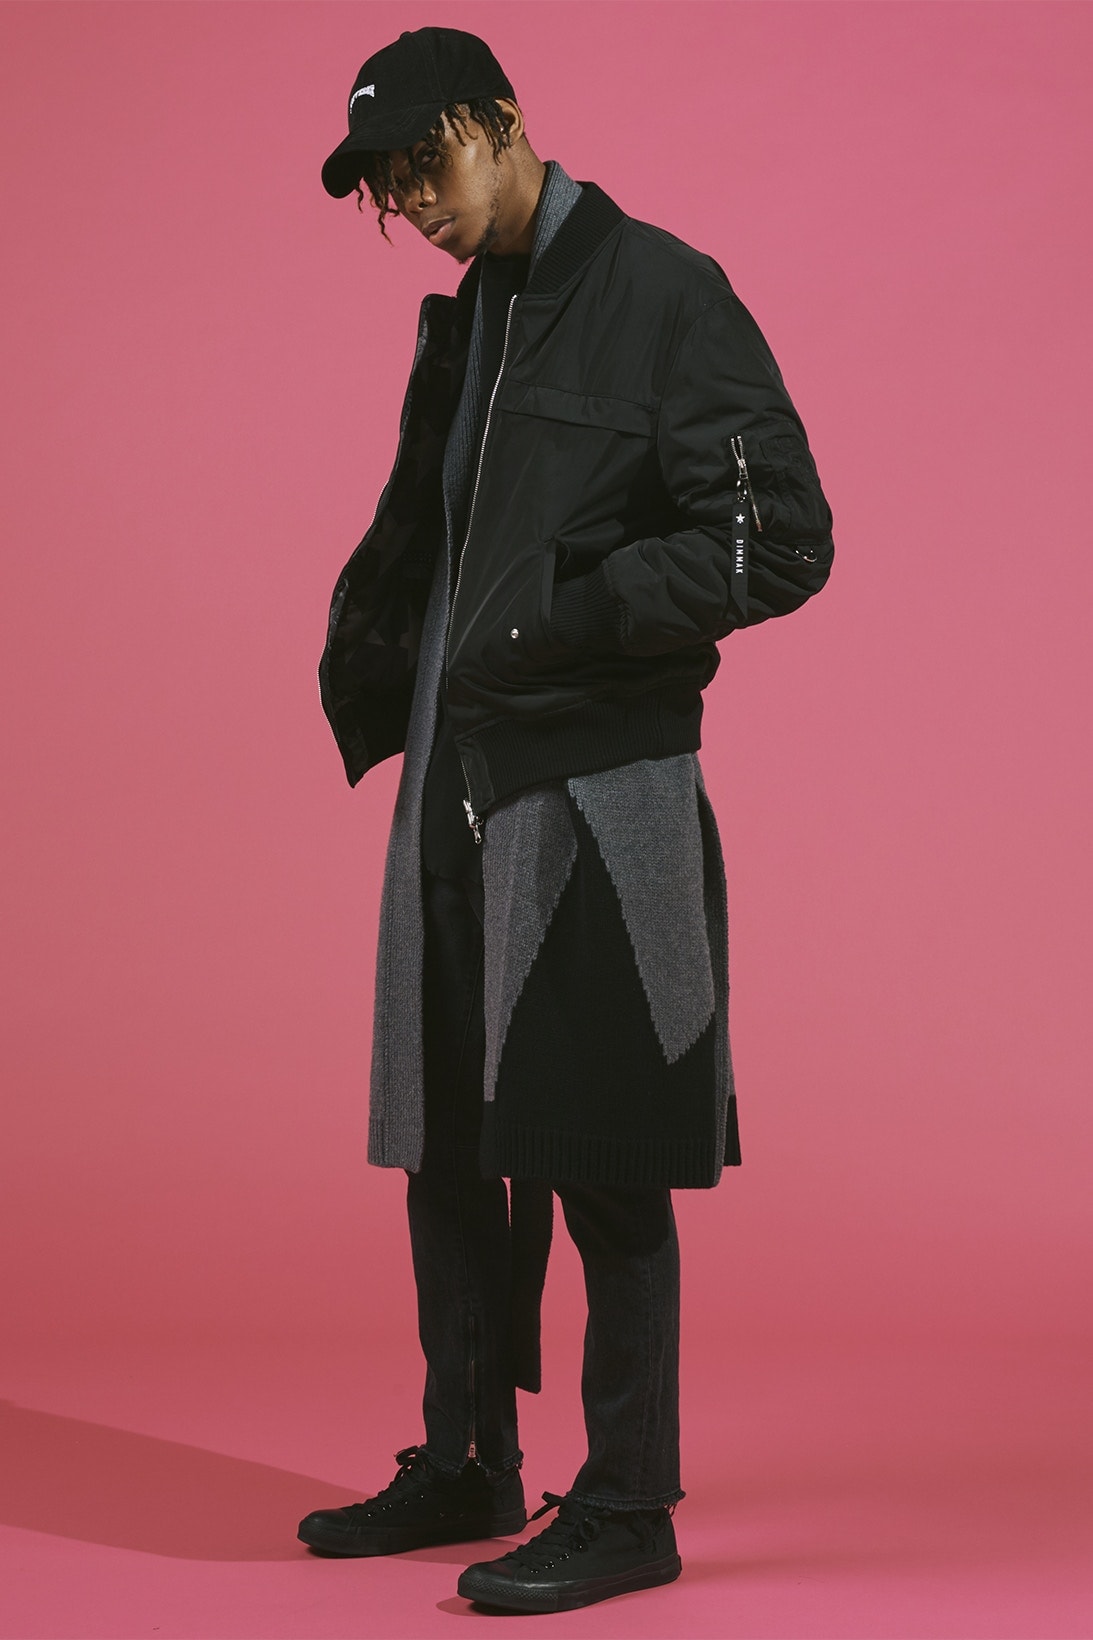 Steve Aoki 主理品牌 DIM MAK x CONVERSE TOKYO 聯名系列型錄完整曝光